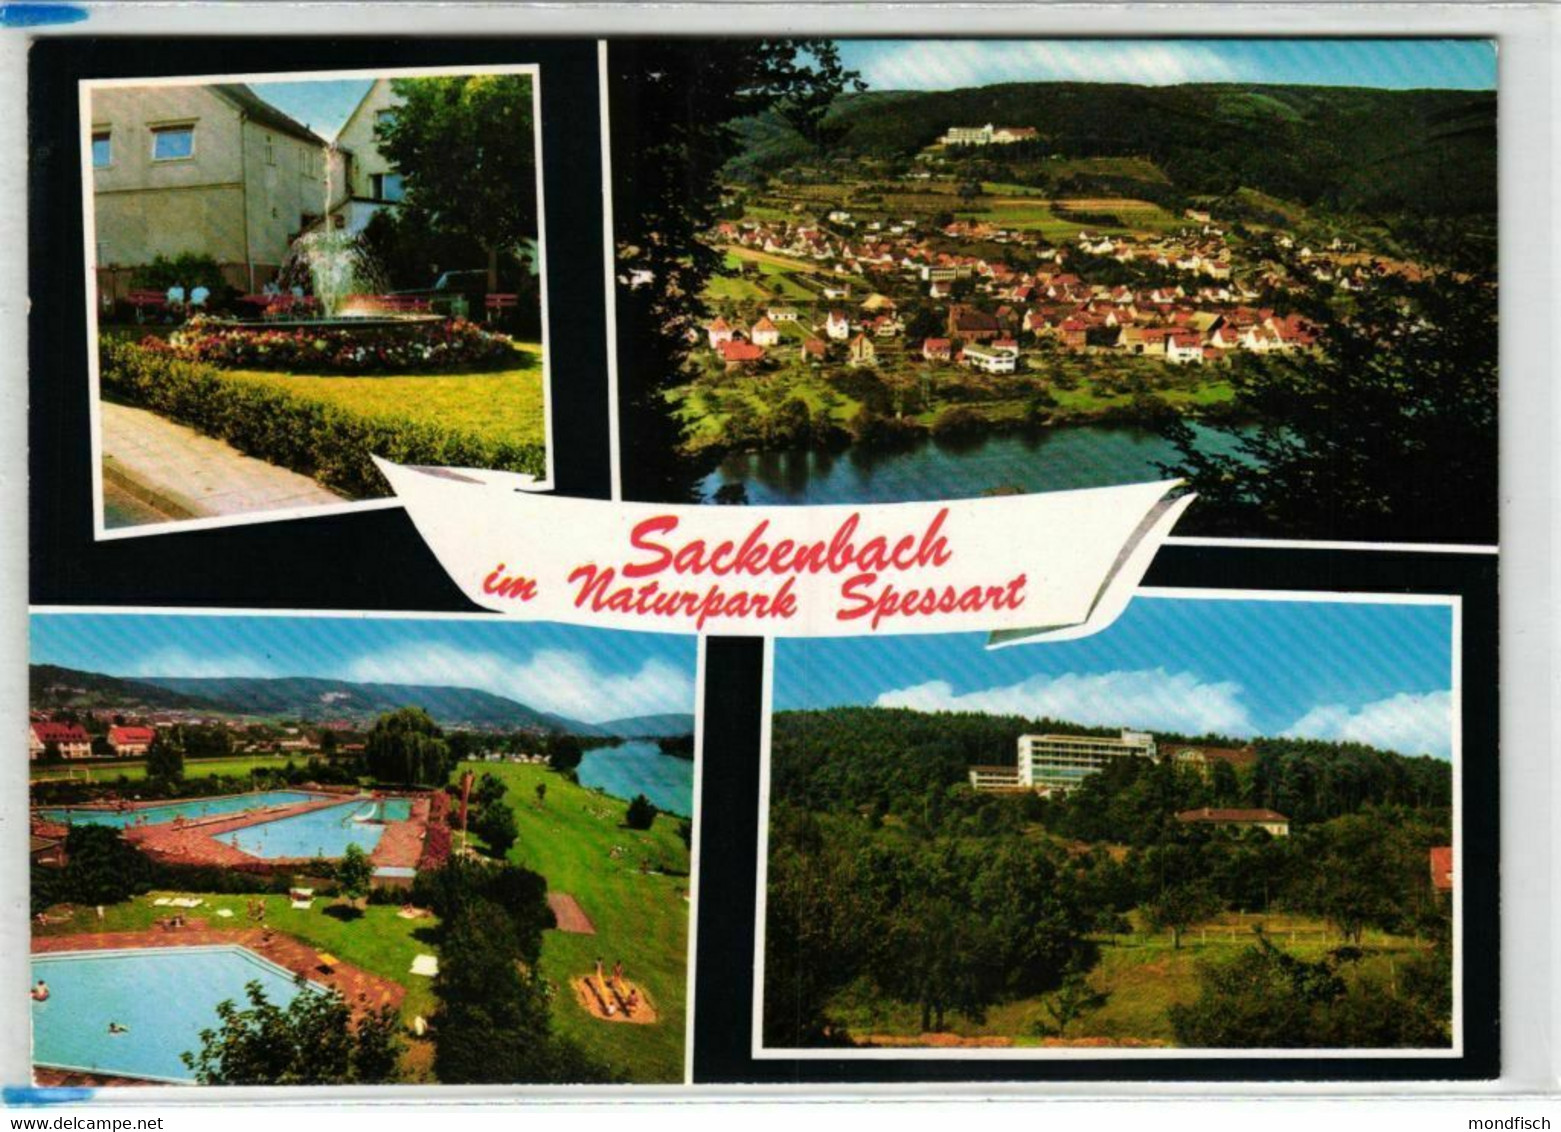 Lohr-Sackenbach Im Naturpark Spessart - Lohr